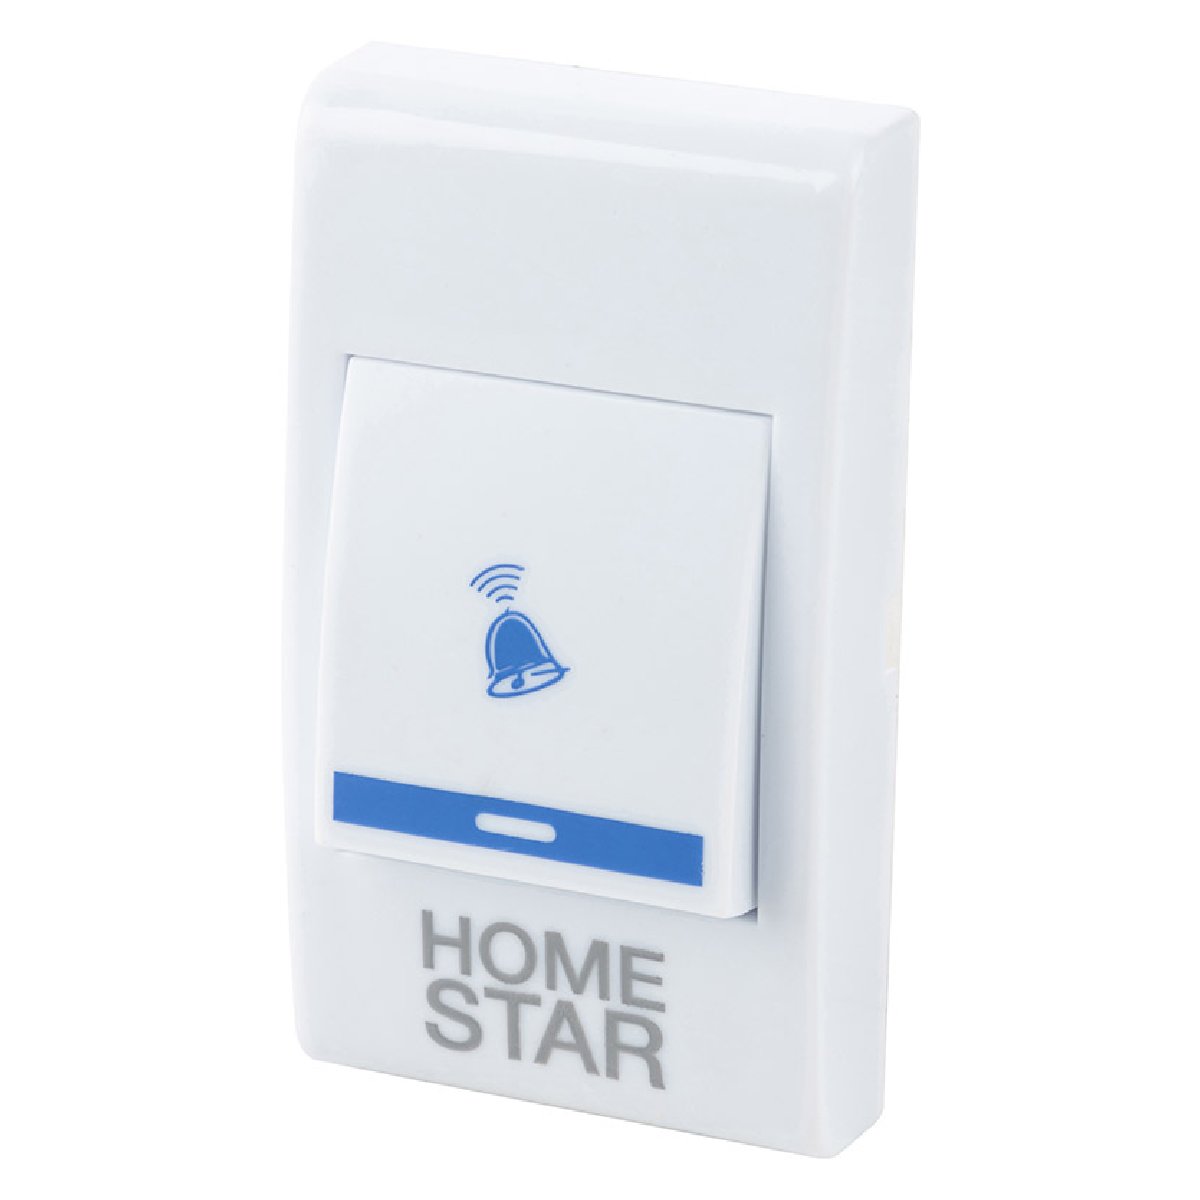 Звонок электрический HomeStar HS-0102 беспроводной (103607)